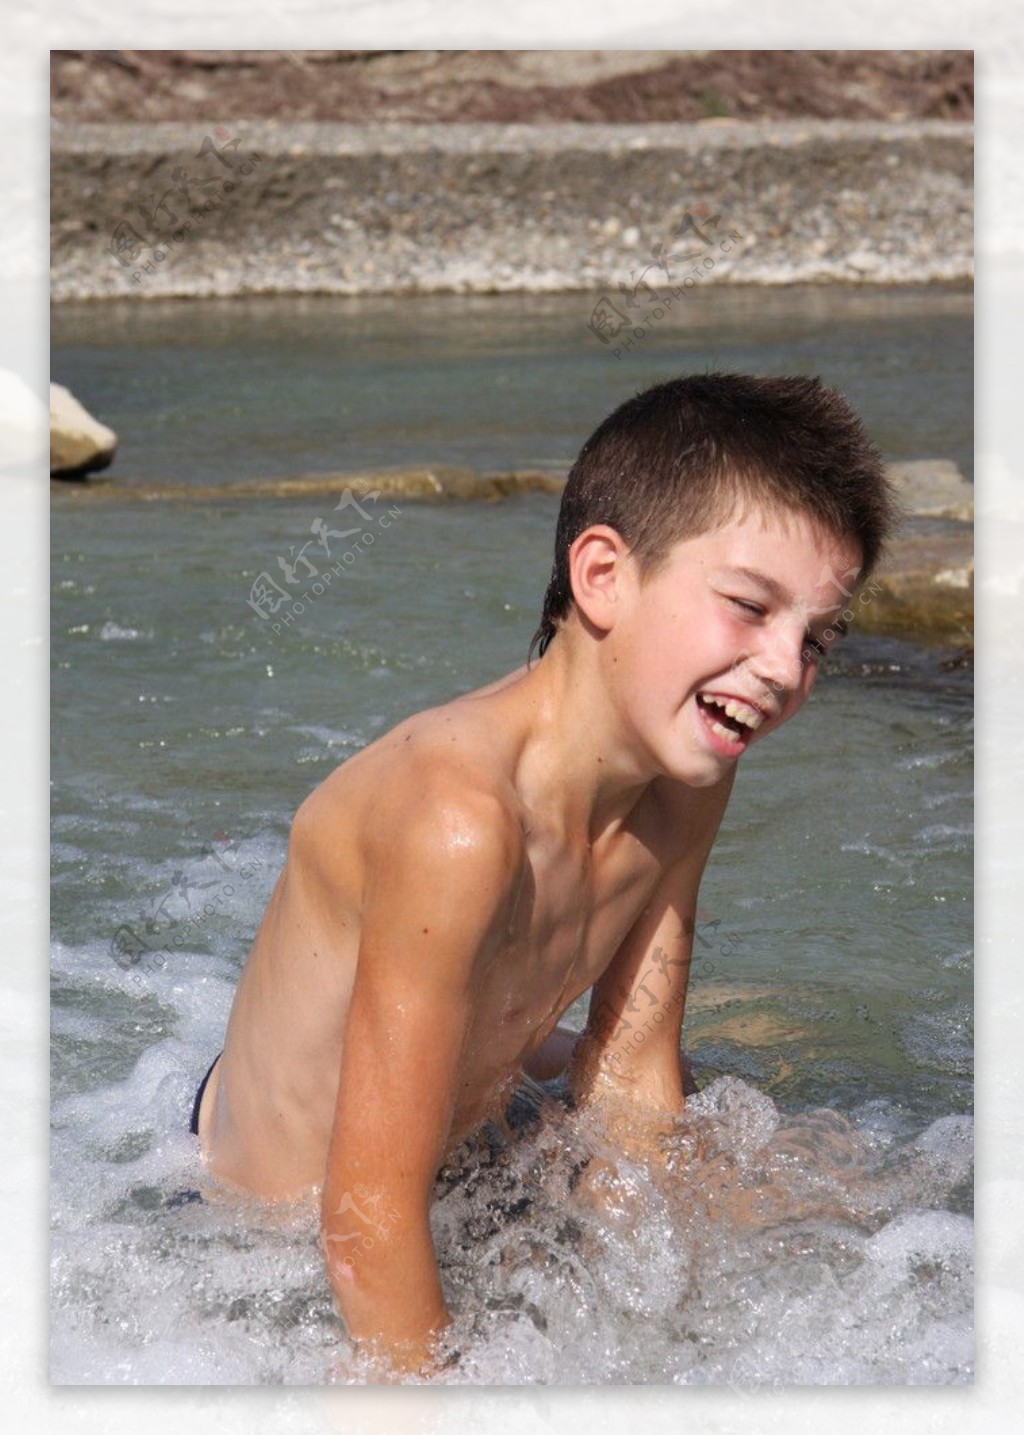 水中玩得开心的男孩图片